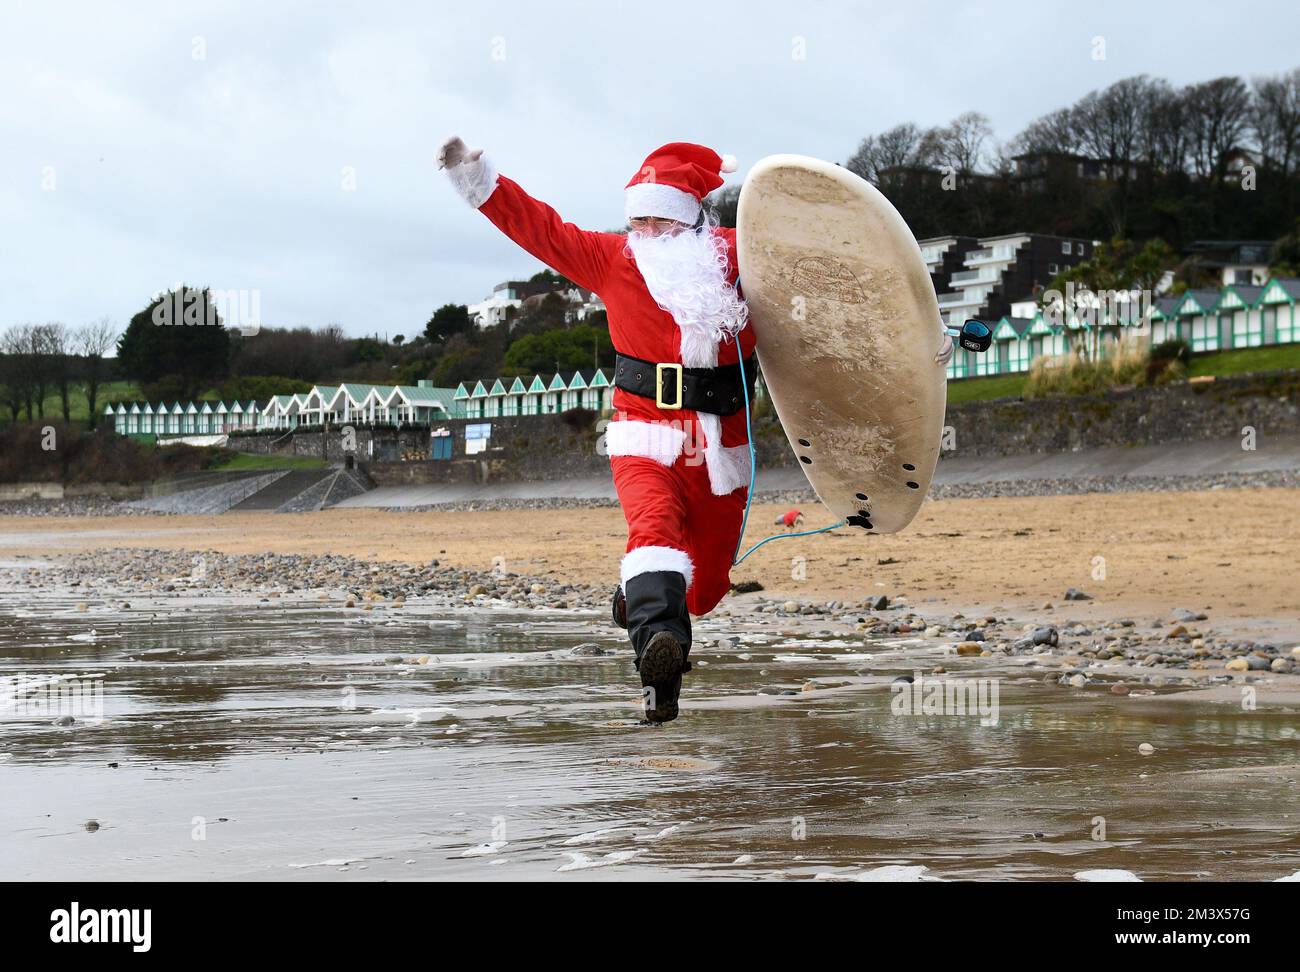 Le surfeur local, Andy Parkinson, a photographié se dirigeant vers les eaux glaciales de Langland Bay, Swansea, lors de l'événement annuel de Santa Surf qui a lieu à la plage de Gower chaque année pour recueillir de l'argent pour les surfeurs contre Sewerage et aider les surfeurs à entrer dans l'esprit de Noël. Banque D'Images